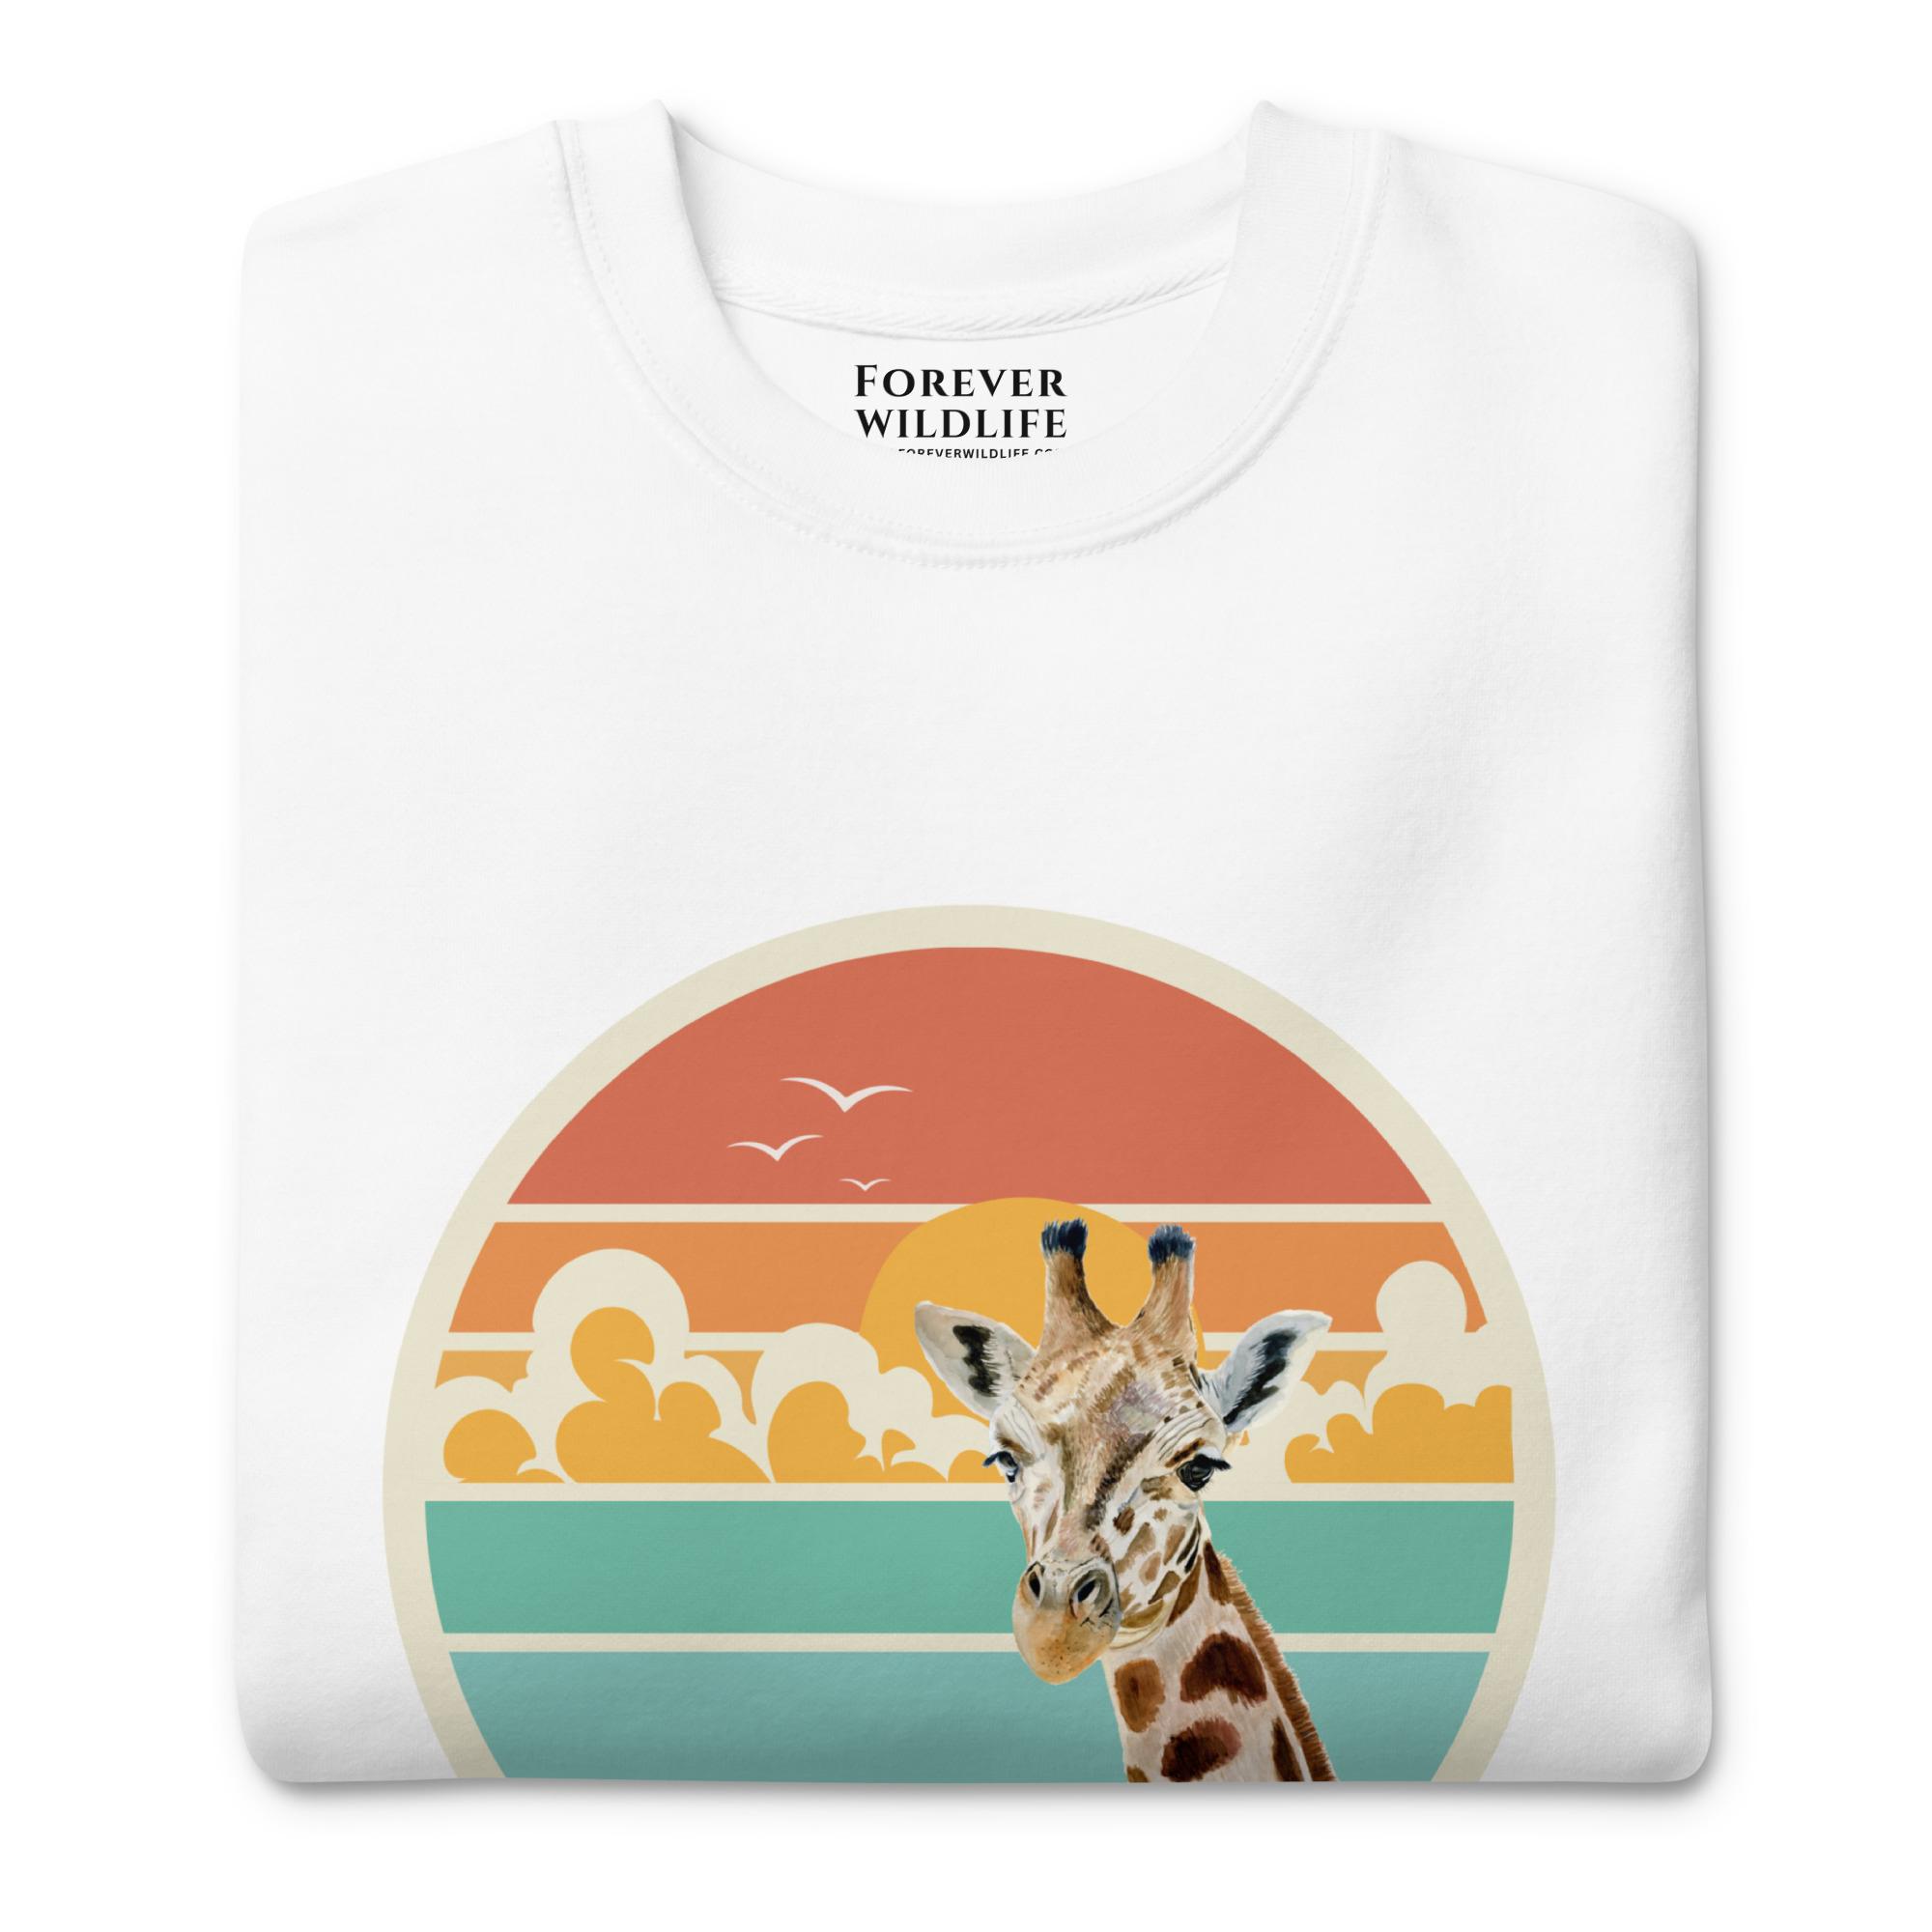 Giraffe Sweatshirt in White-Premium Wildlife Animal Inspiration Sweatshirt Design, part of Wildlife Sweatshirts & Clothing from Forever Wildlife.